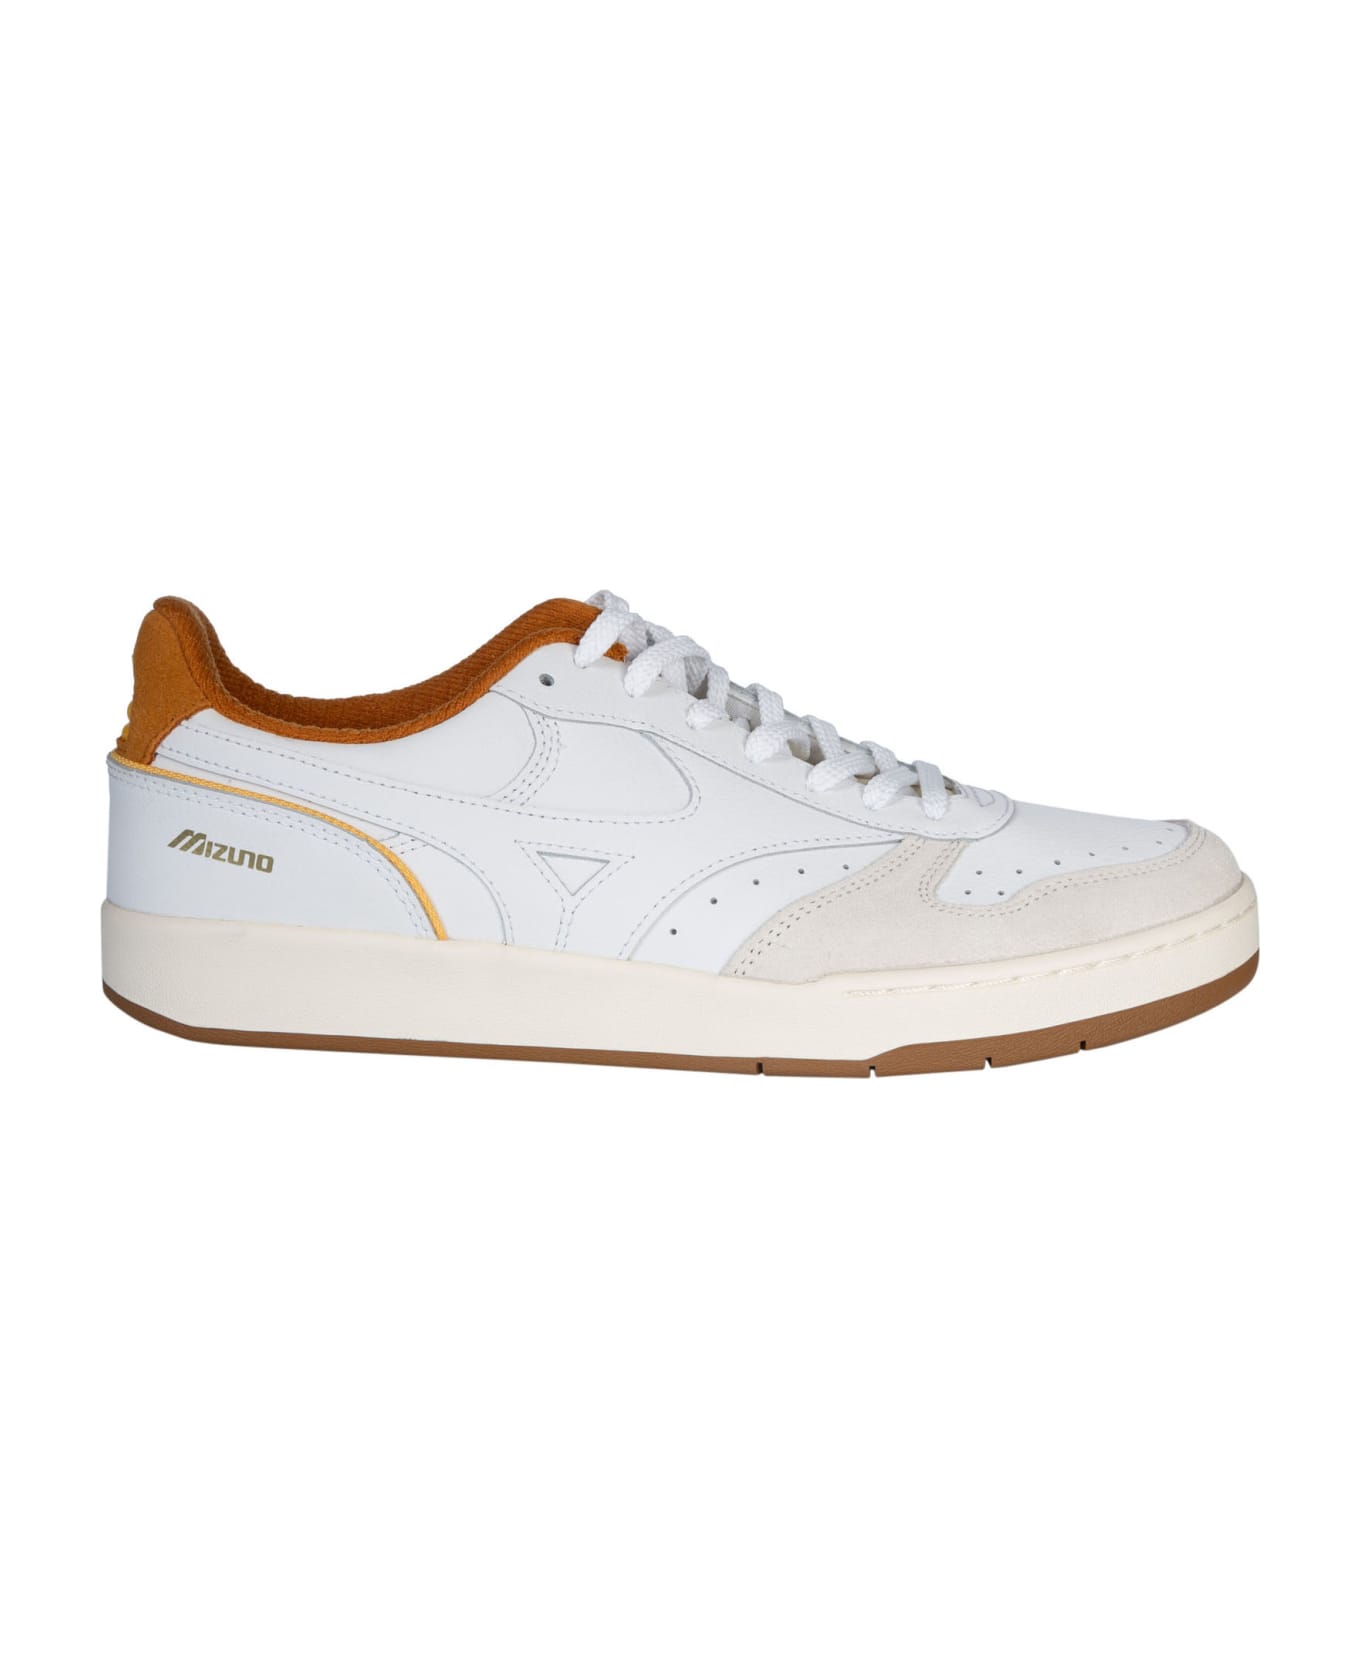 Mizuno Sportstyle Sneakers - White